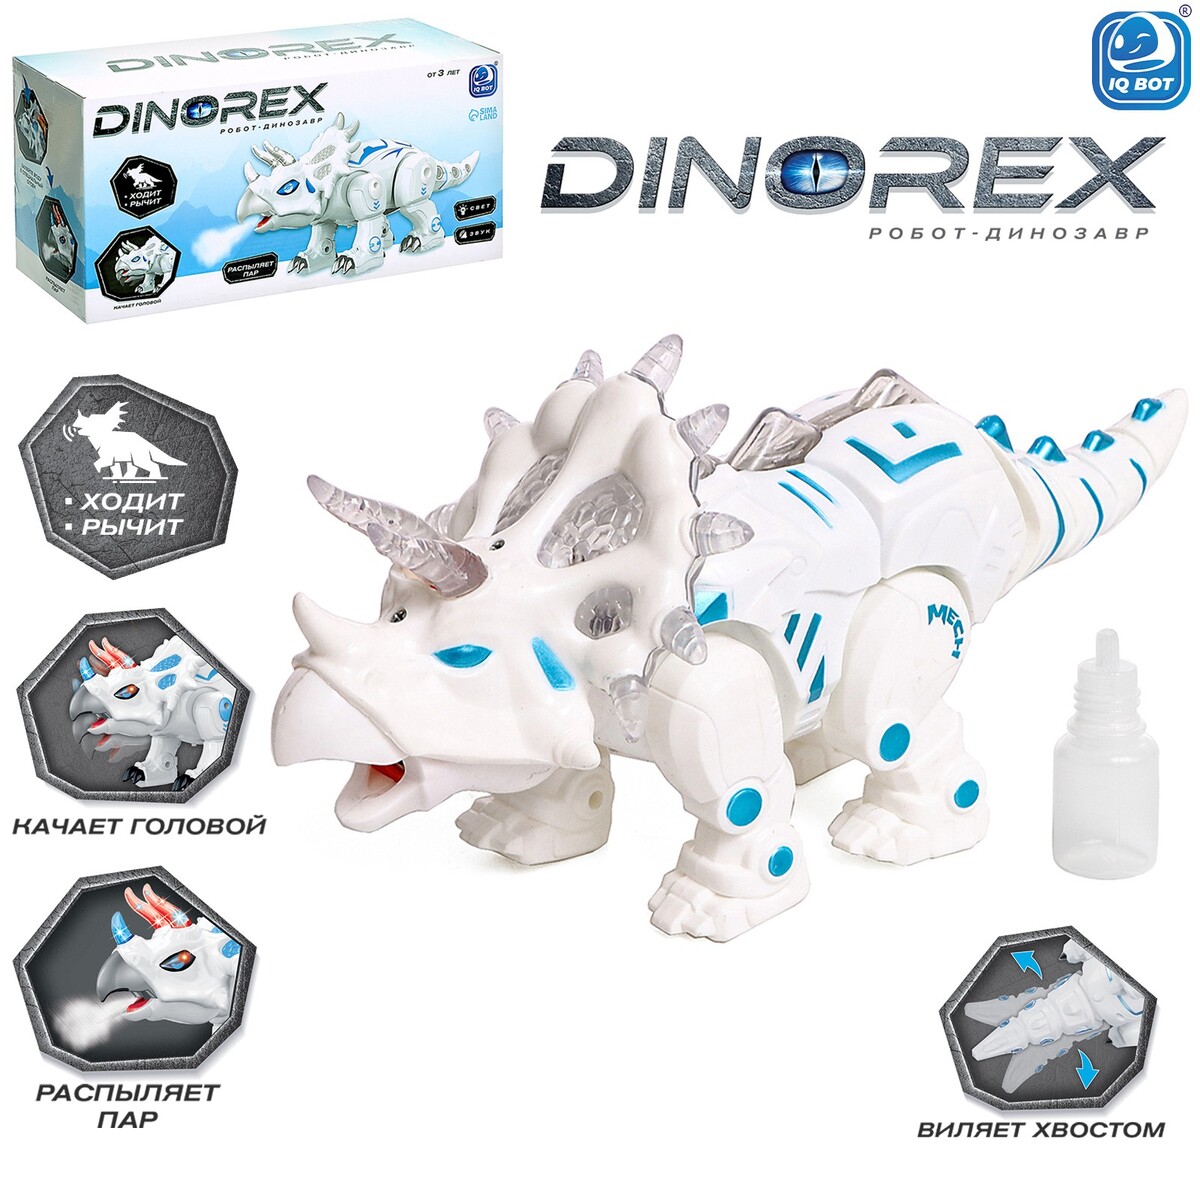 Робот динозавр dinorex iq bot, интерактивный: световые и звуковые эффекты, на батарейках робот огнеборец трансформируется световые и звуковые эффекты